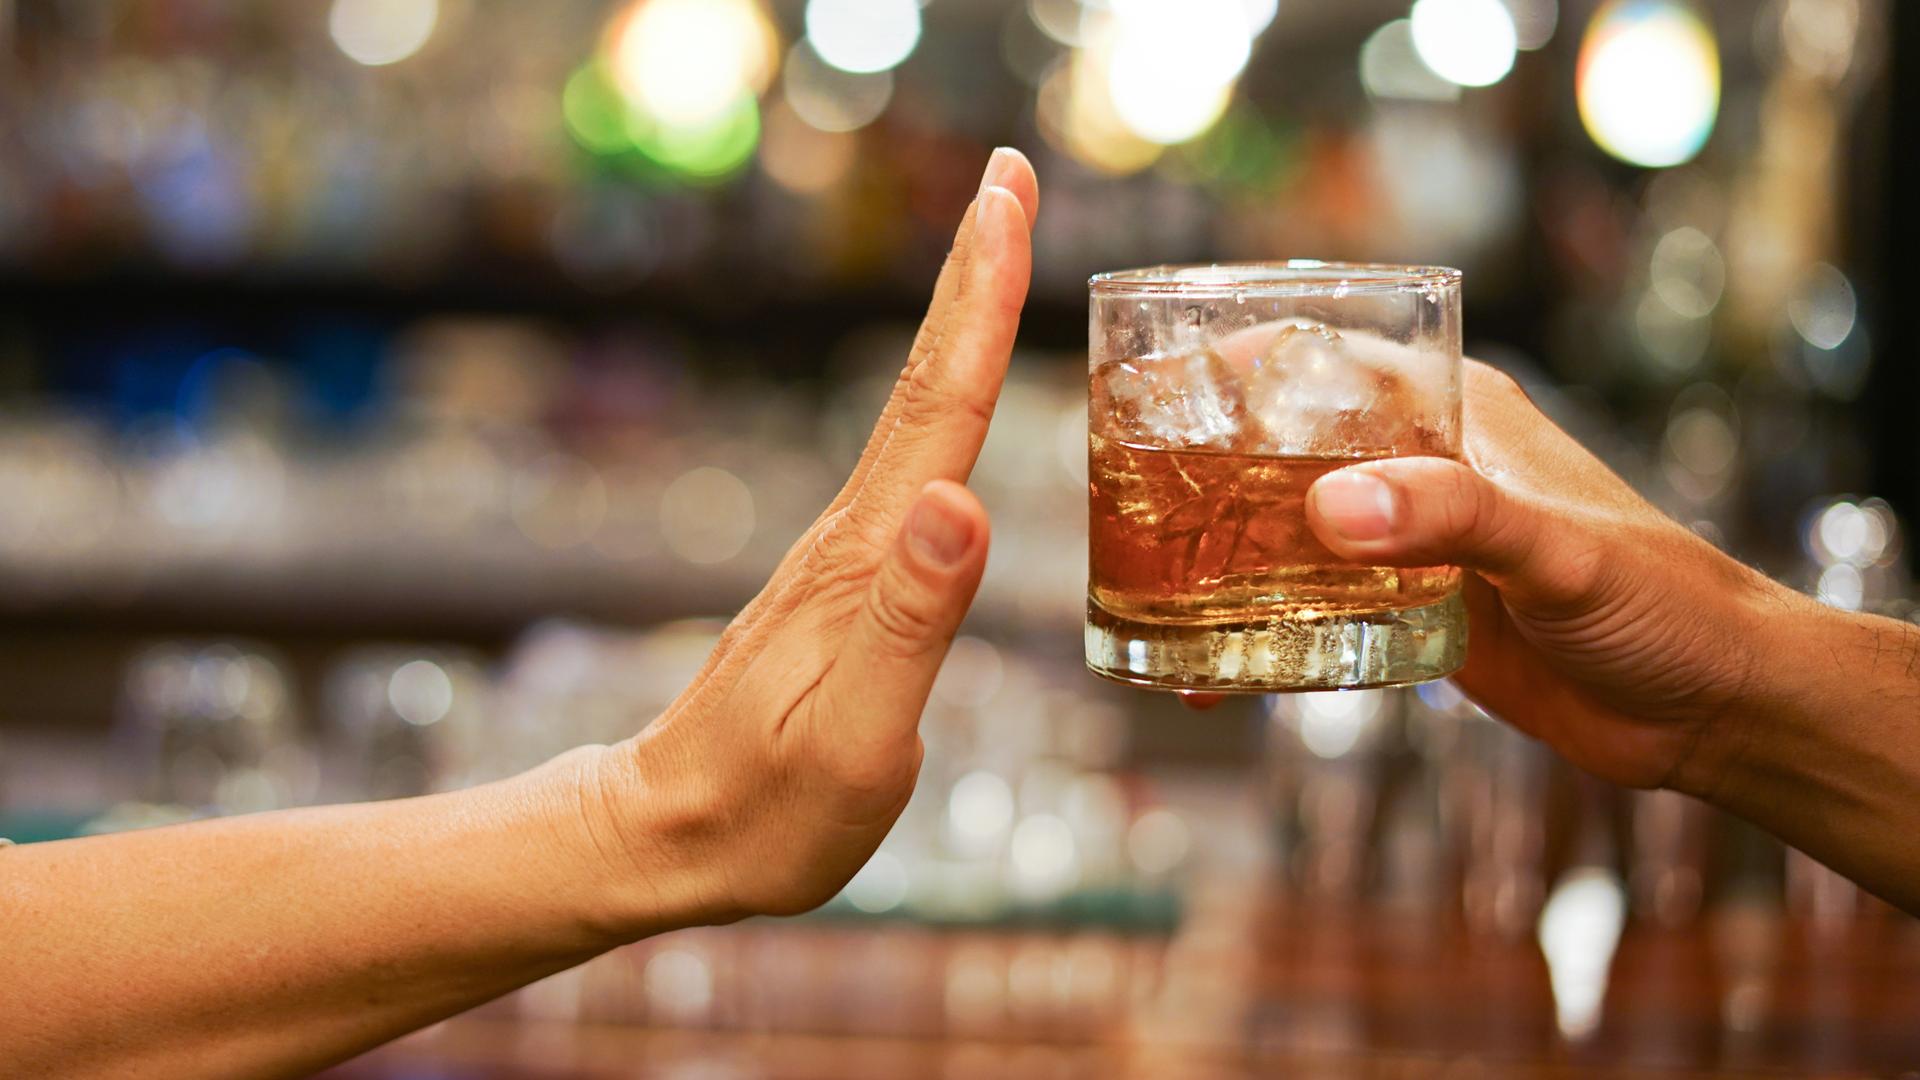 Eine Hand reicht ein Glas mit einer alkoholähnlichen Flüssigkeit von rechts ins Bild. Eine andere bedeutet von der linken Seite "Stop".